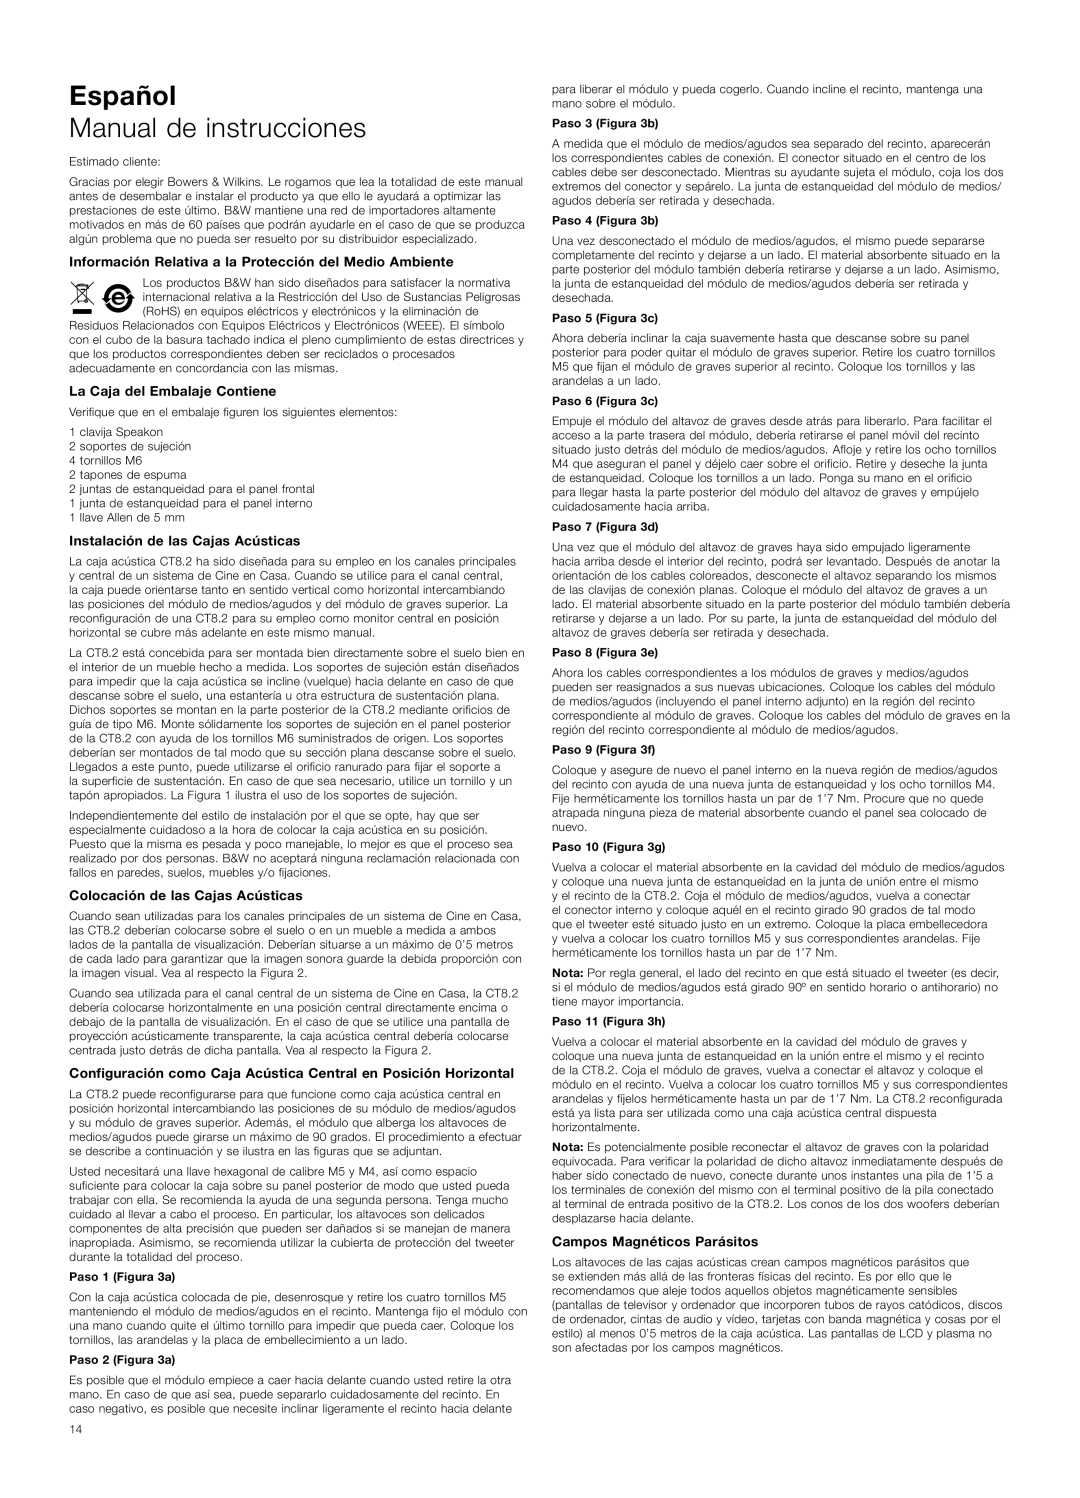 Bowers & Wilkins CT8.2 LCR Español, Manual de instrucciones, La Caja del Embalaje Contiene, Campos Magnéticos Parásitos 